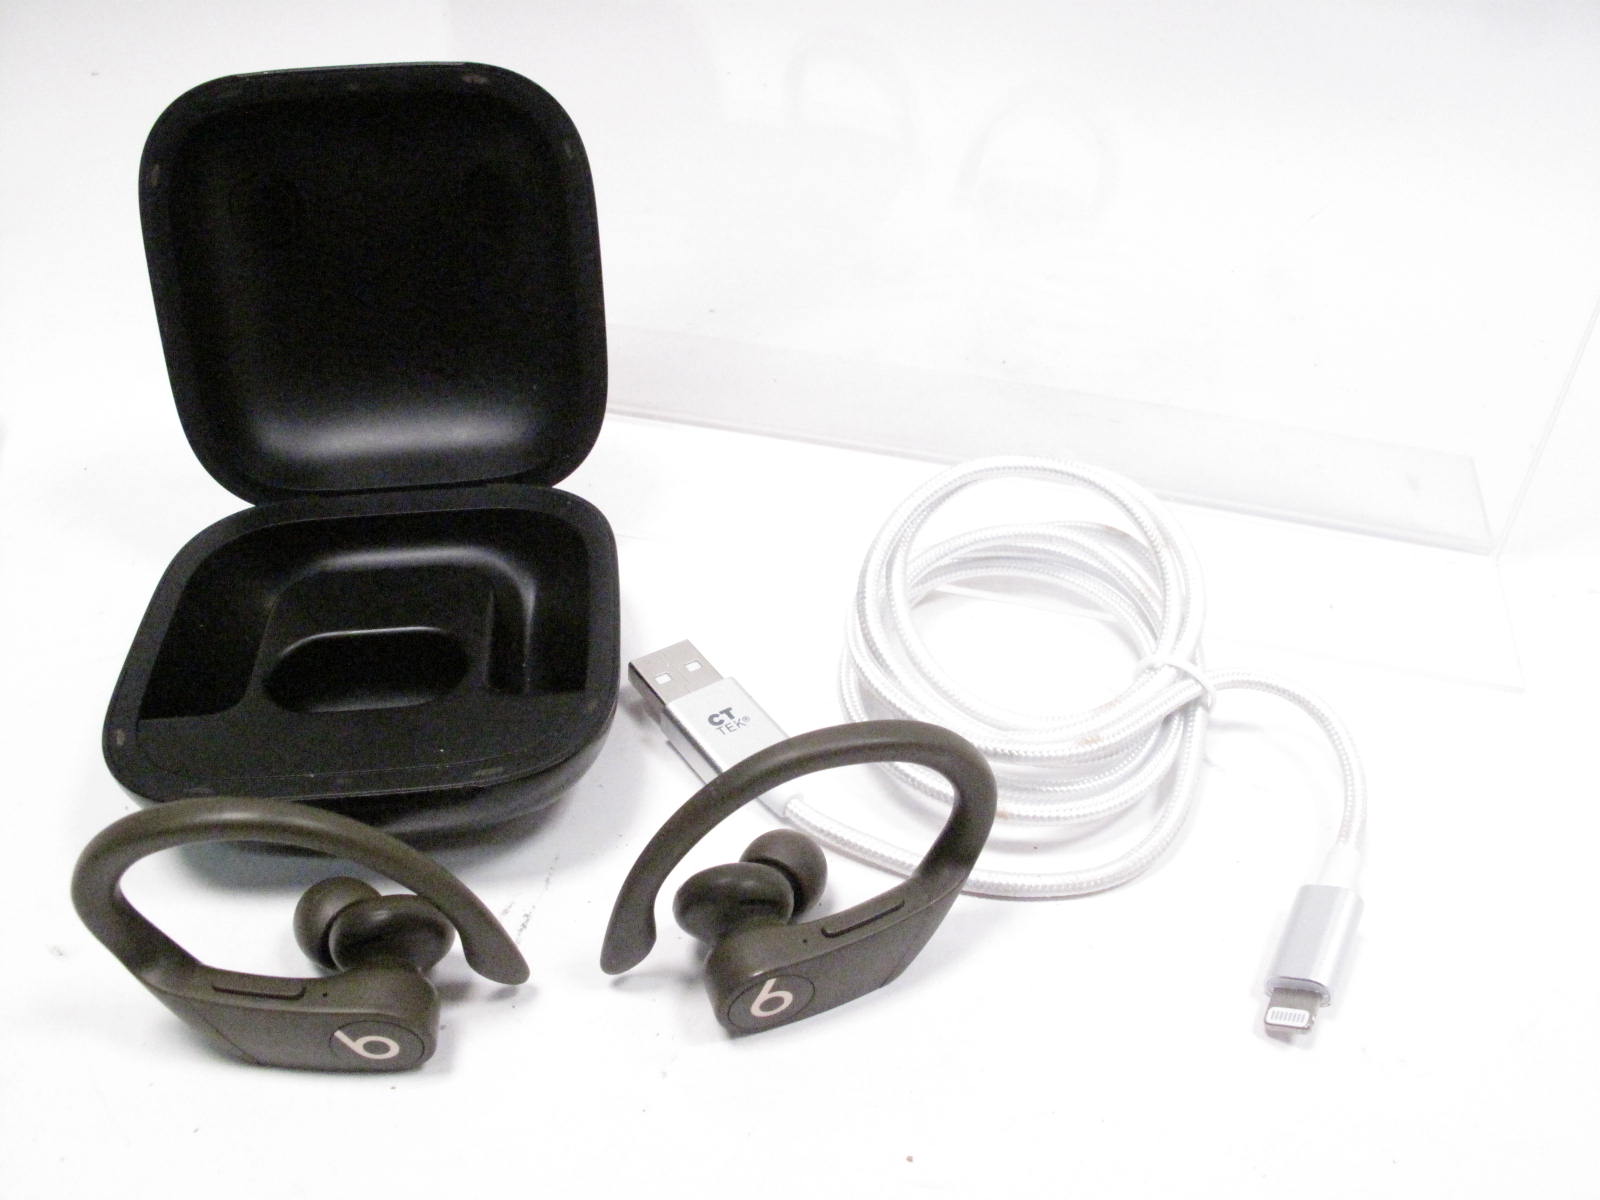 Powerbeats Pro Totally Wireless Earphones - Black - MV6Y2LL/A